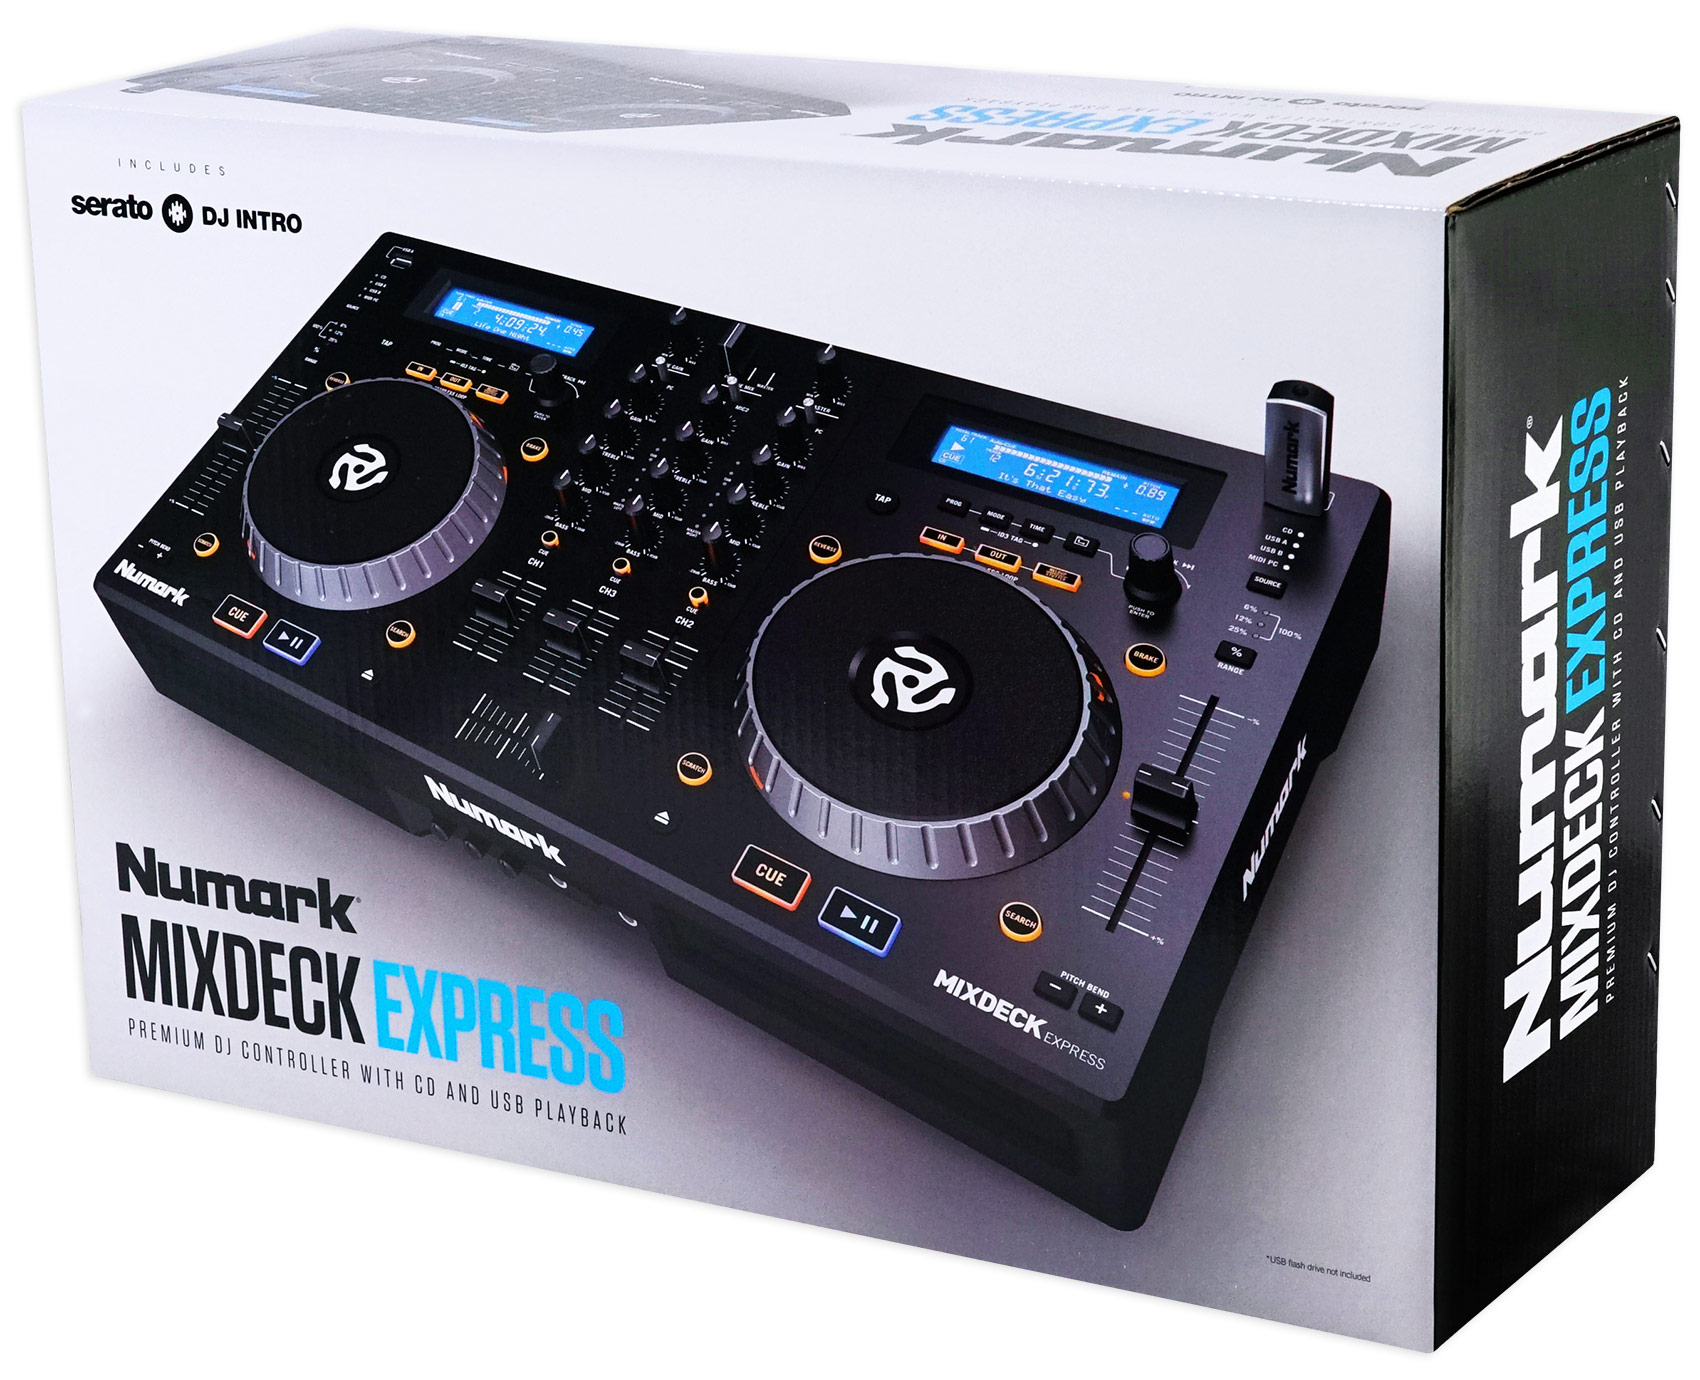 dj mixer express full version free download